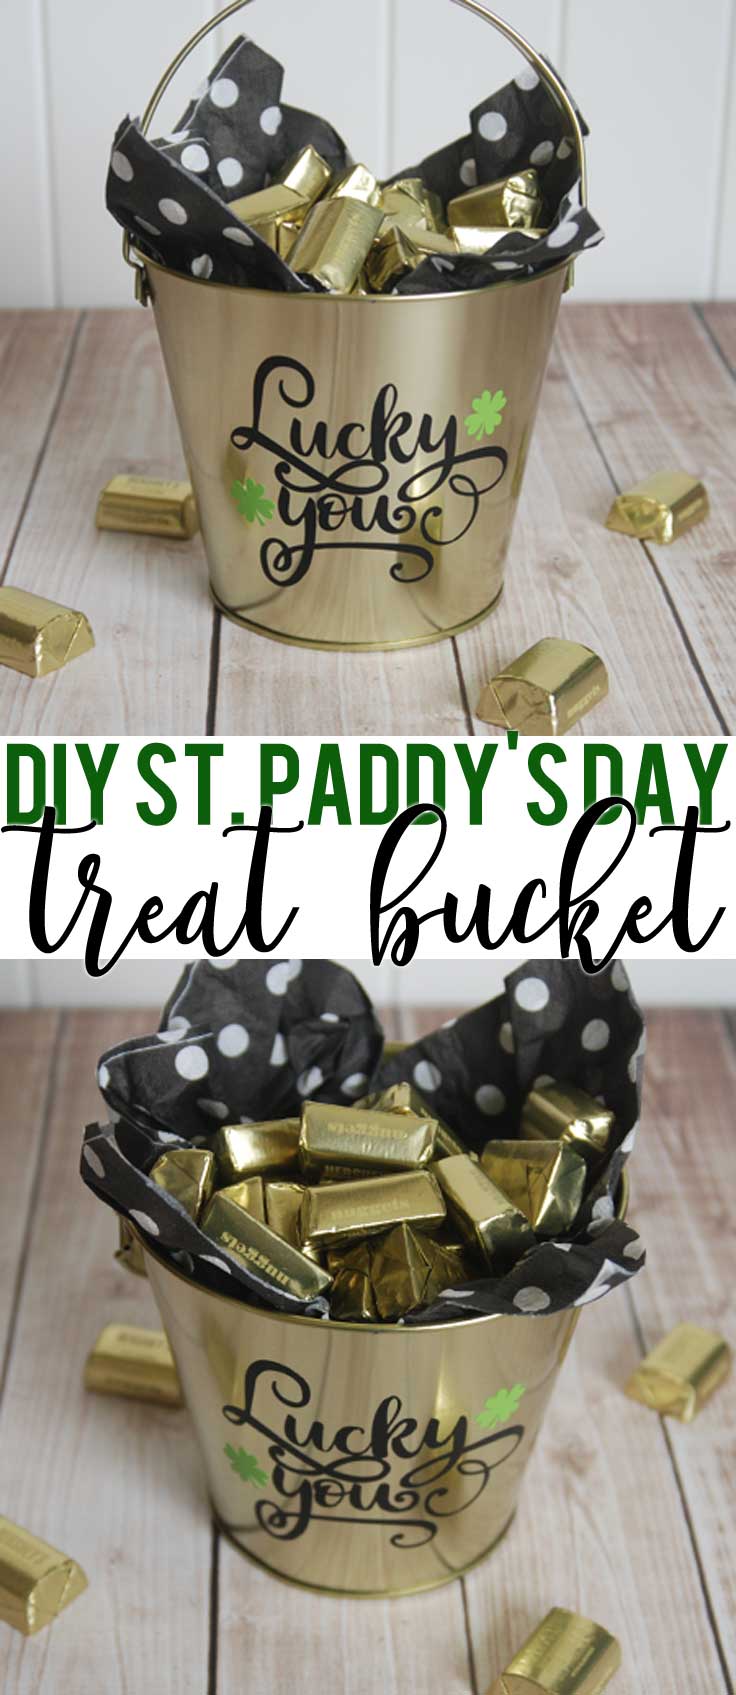 St. Patrick's Day Treat Bucket | Creative St. Patrick’s Day Decor Ideas